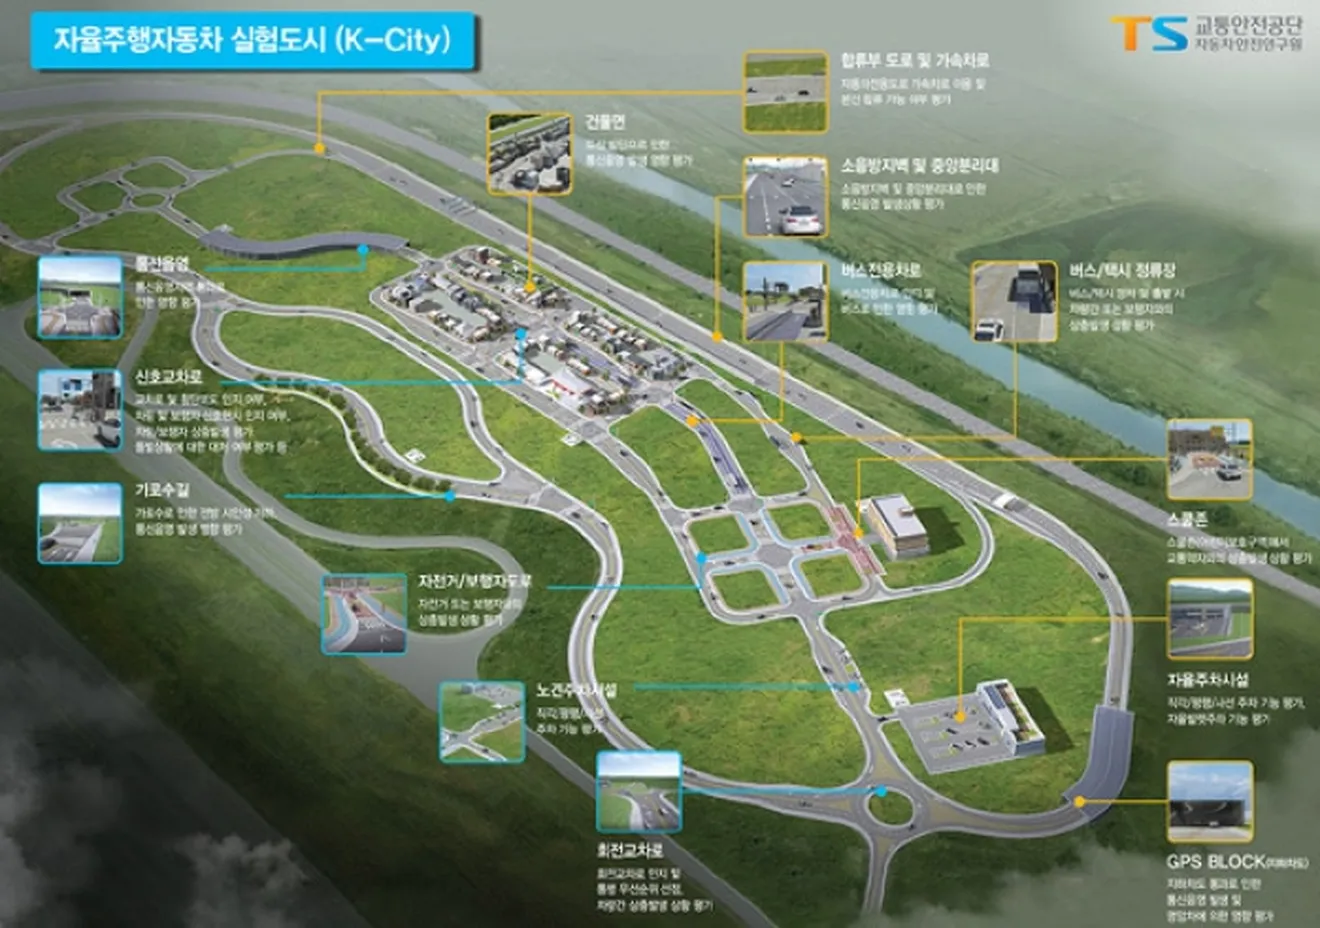 Corea del Sur está construyendo la mayor pista de pruebas del planeta para vehículos autónomos